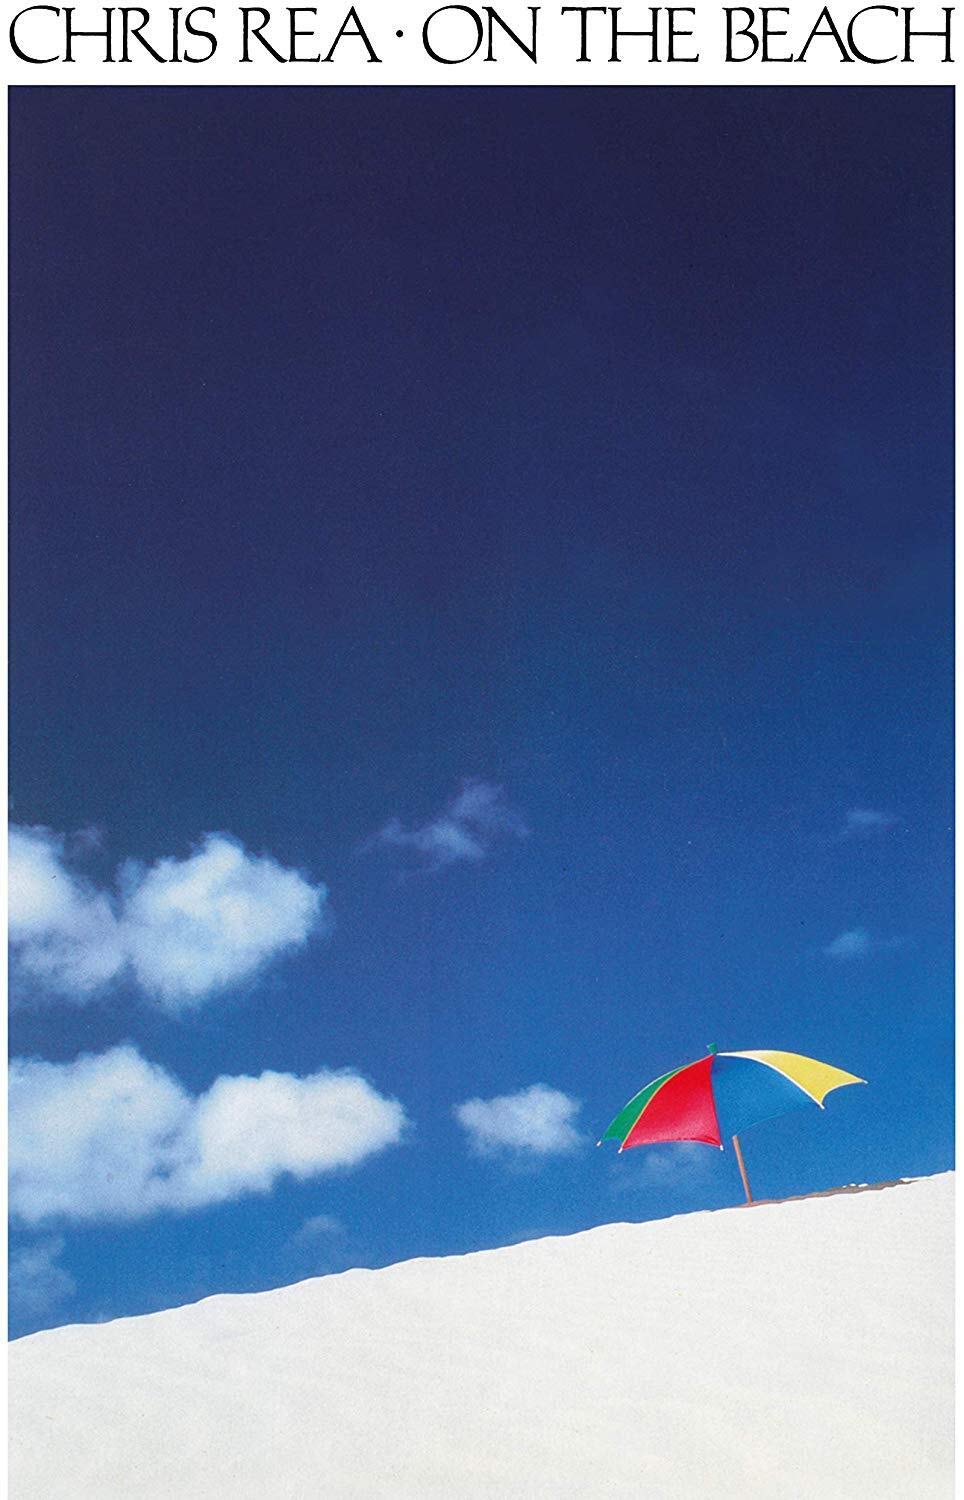 Chris Rea / On the Beach (CD)